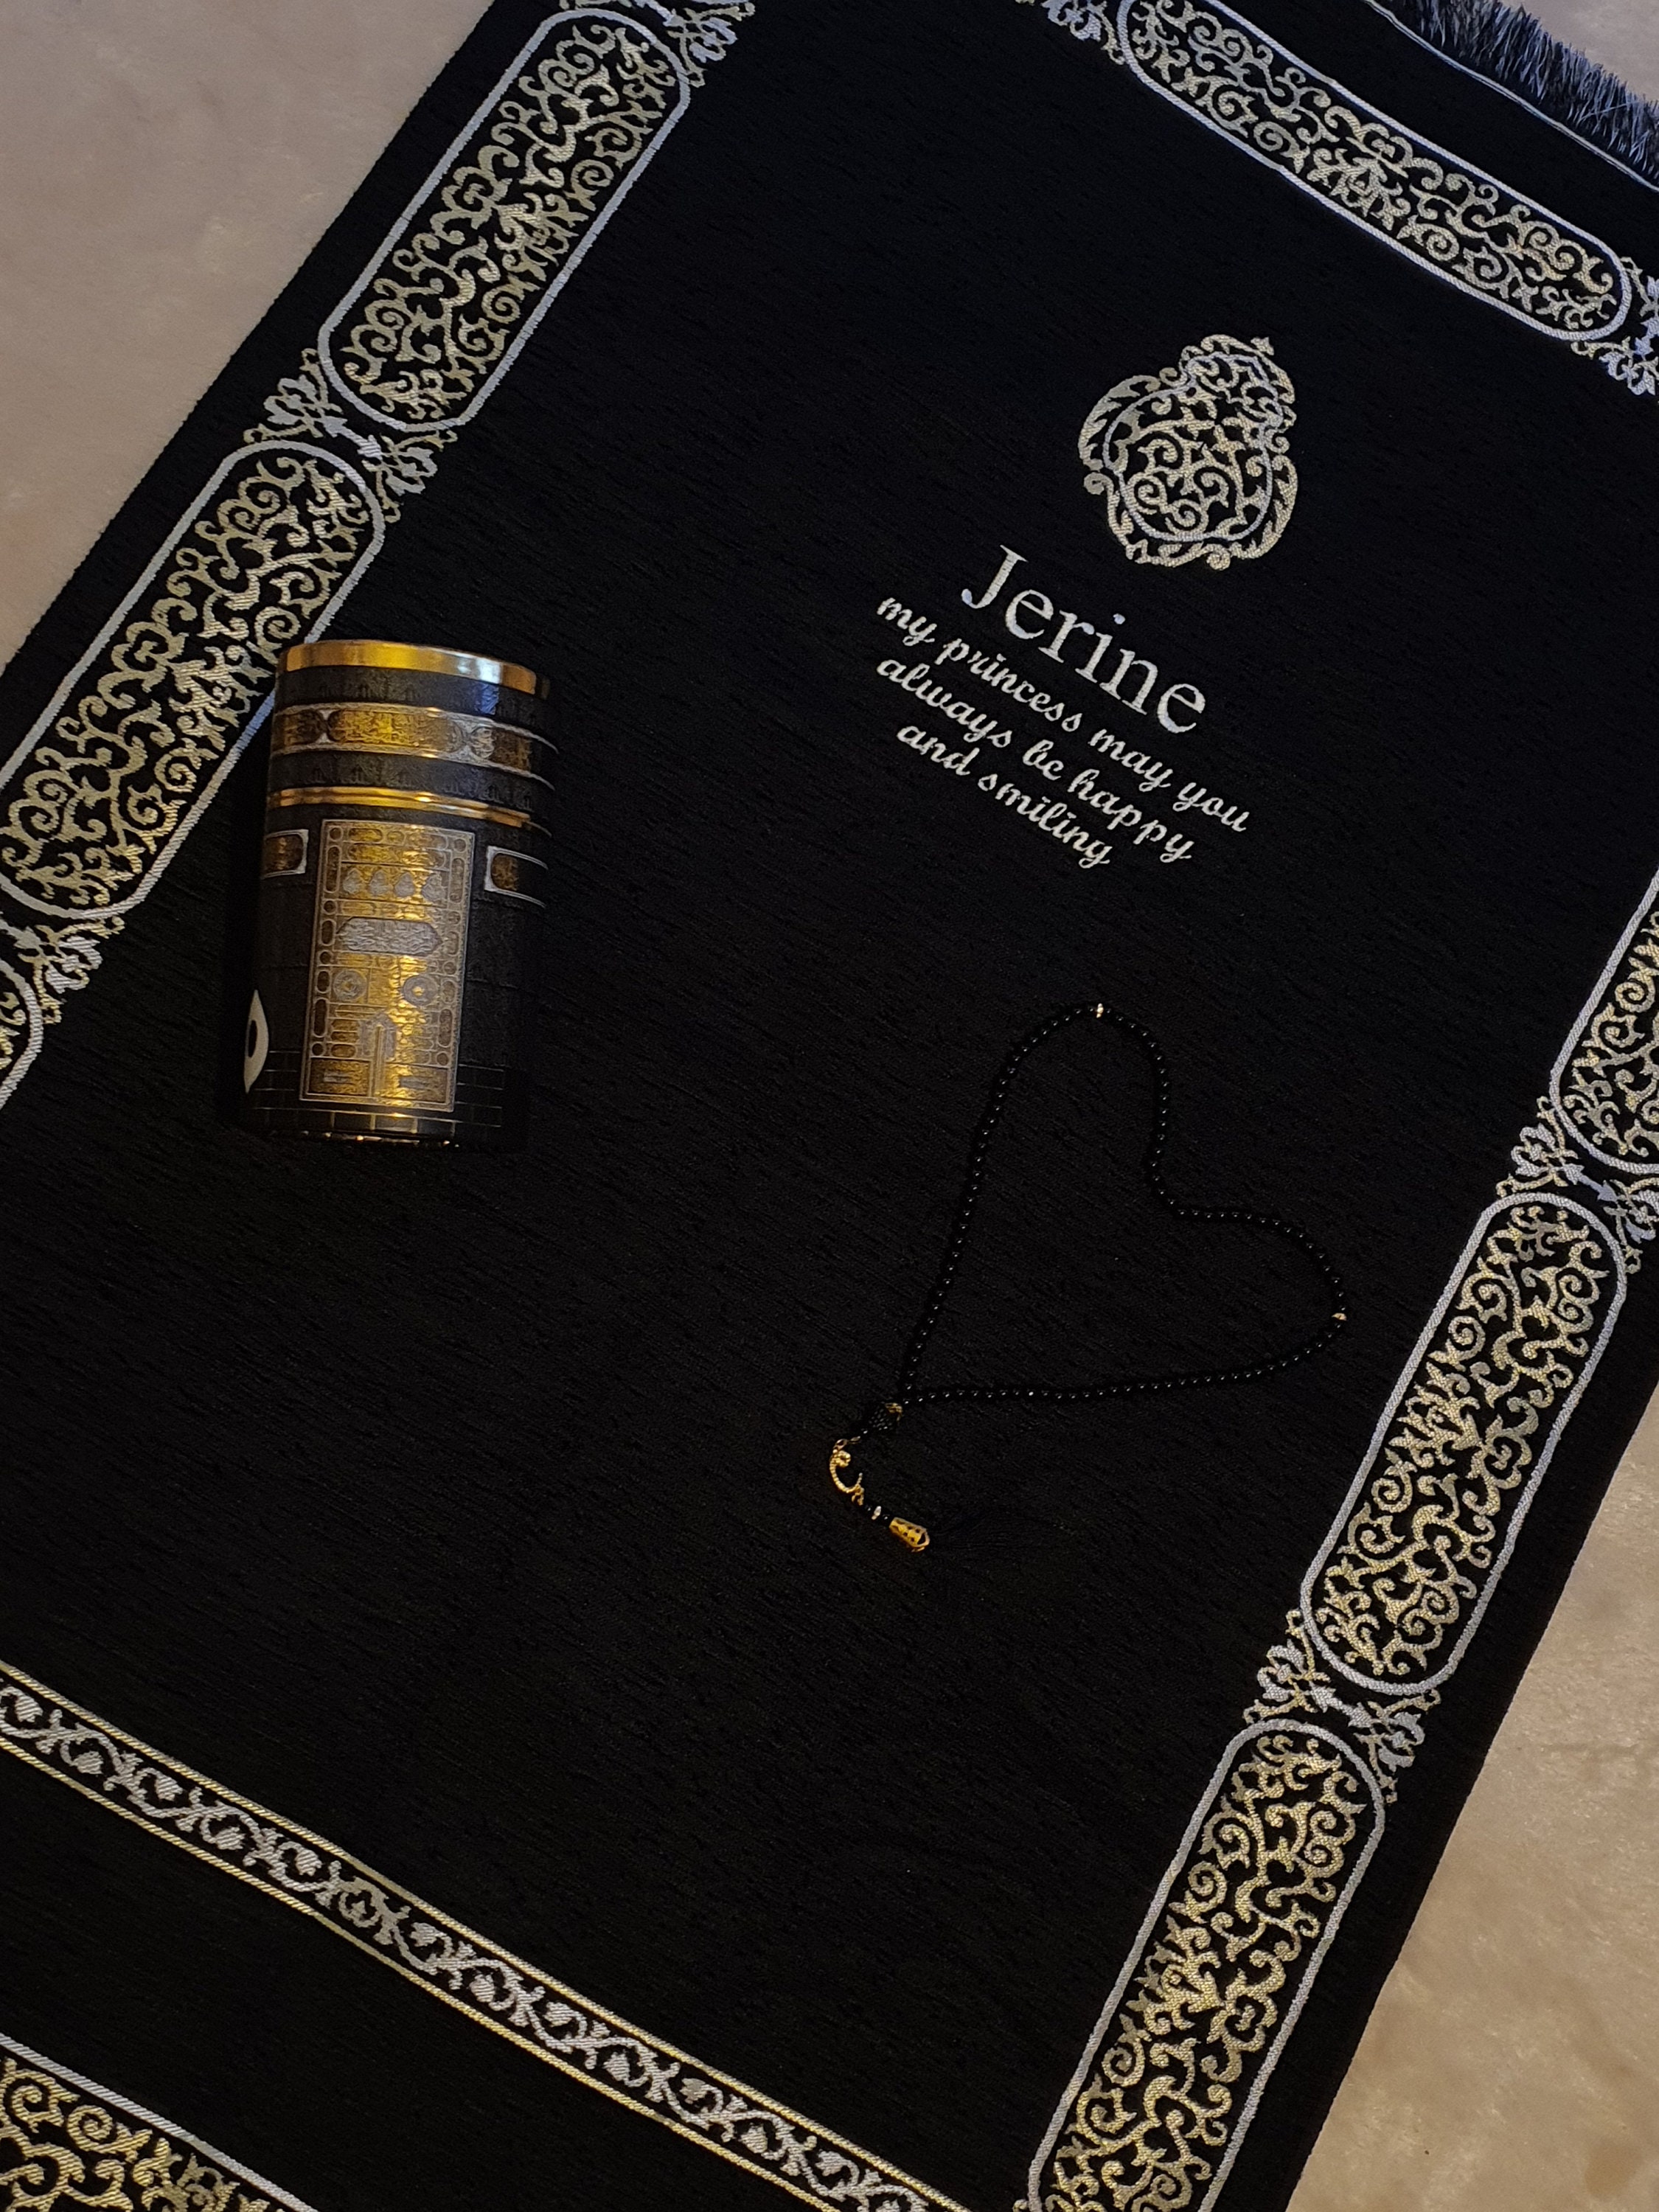 Tapis de prière personnalisé avec prénom (Kaaba - Personnalisable) pour  Enfant et Ado - Couleur garçon - Objet de décoration - Idée cadeau - Oeuvre  artisanale